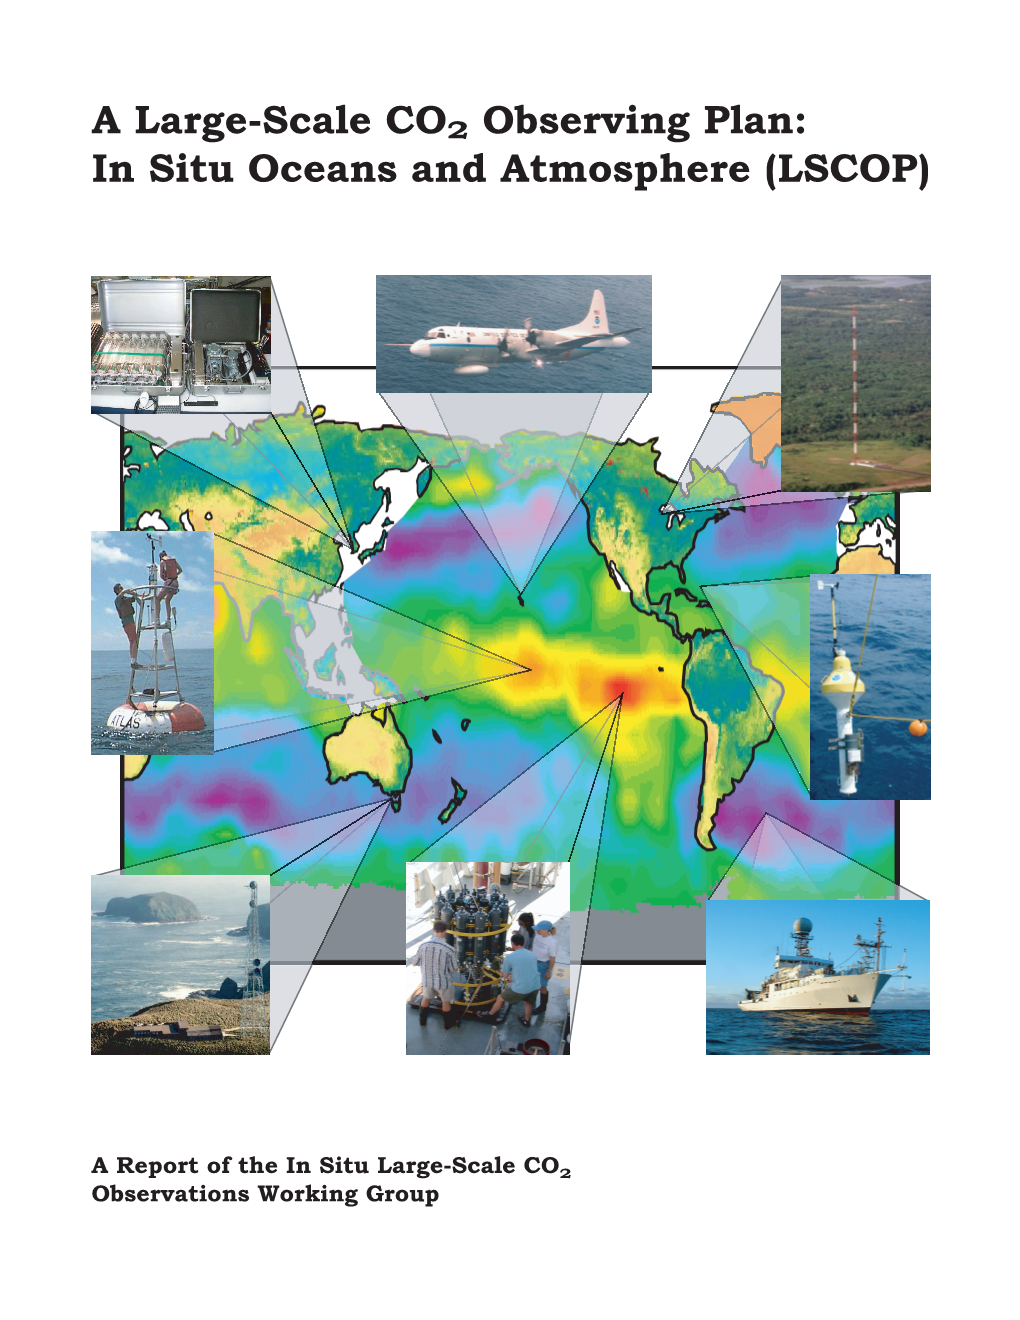 In Situ Oceans and Atmosphere (LSCOP)